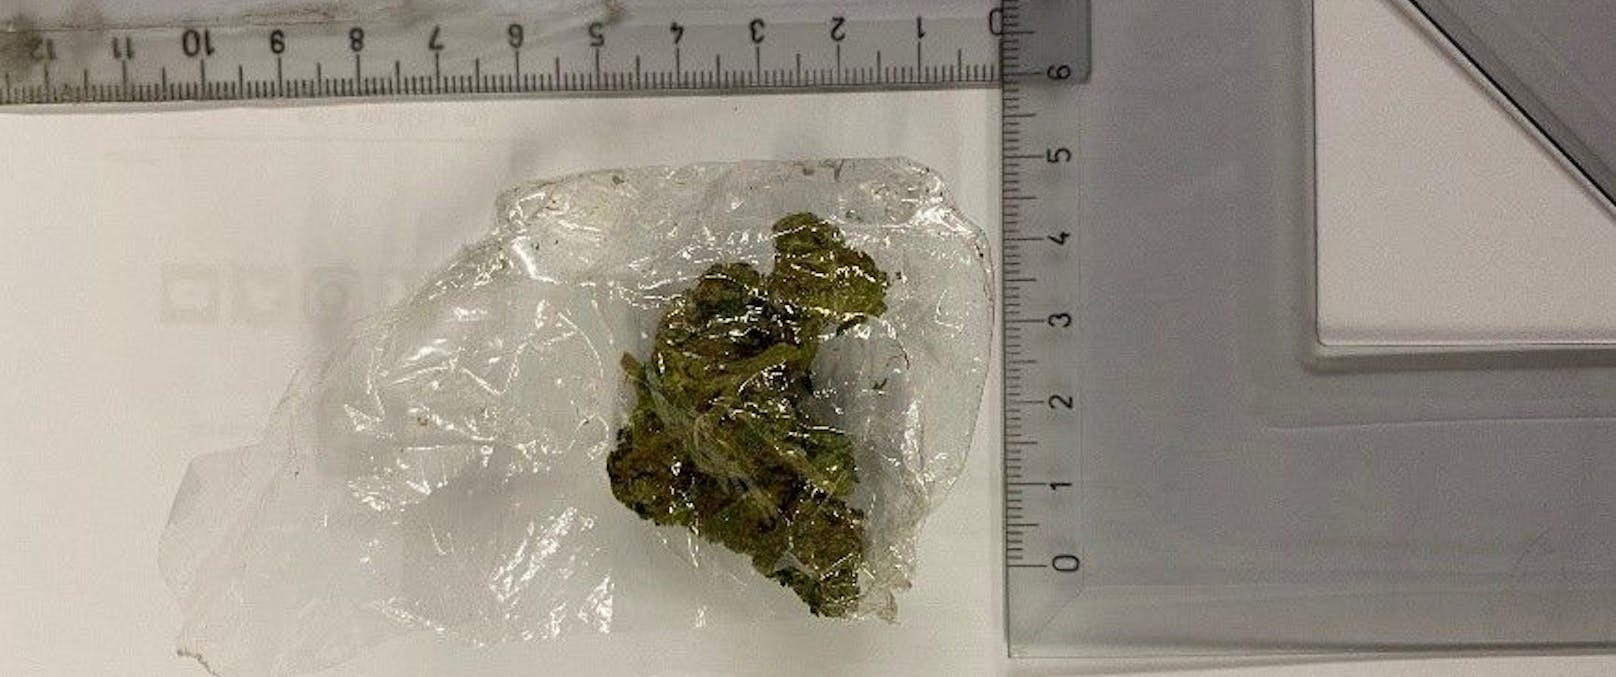 Im Zuge der Durchsuchung des 24-Jährigen stellten die Beamten eine kleine Menge Cannabis sicher.